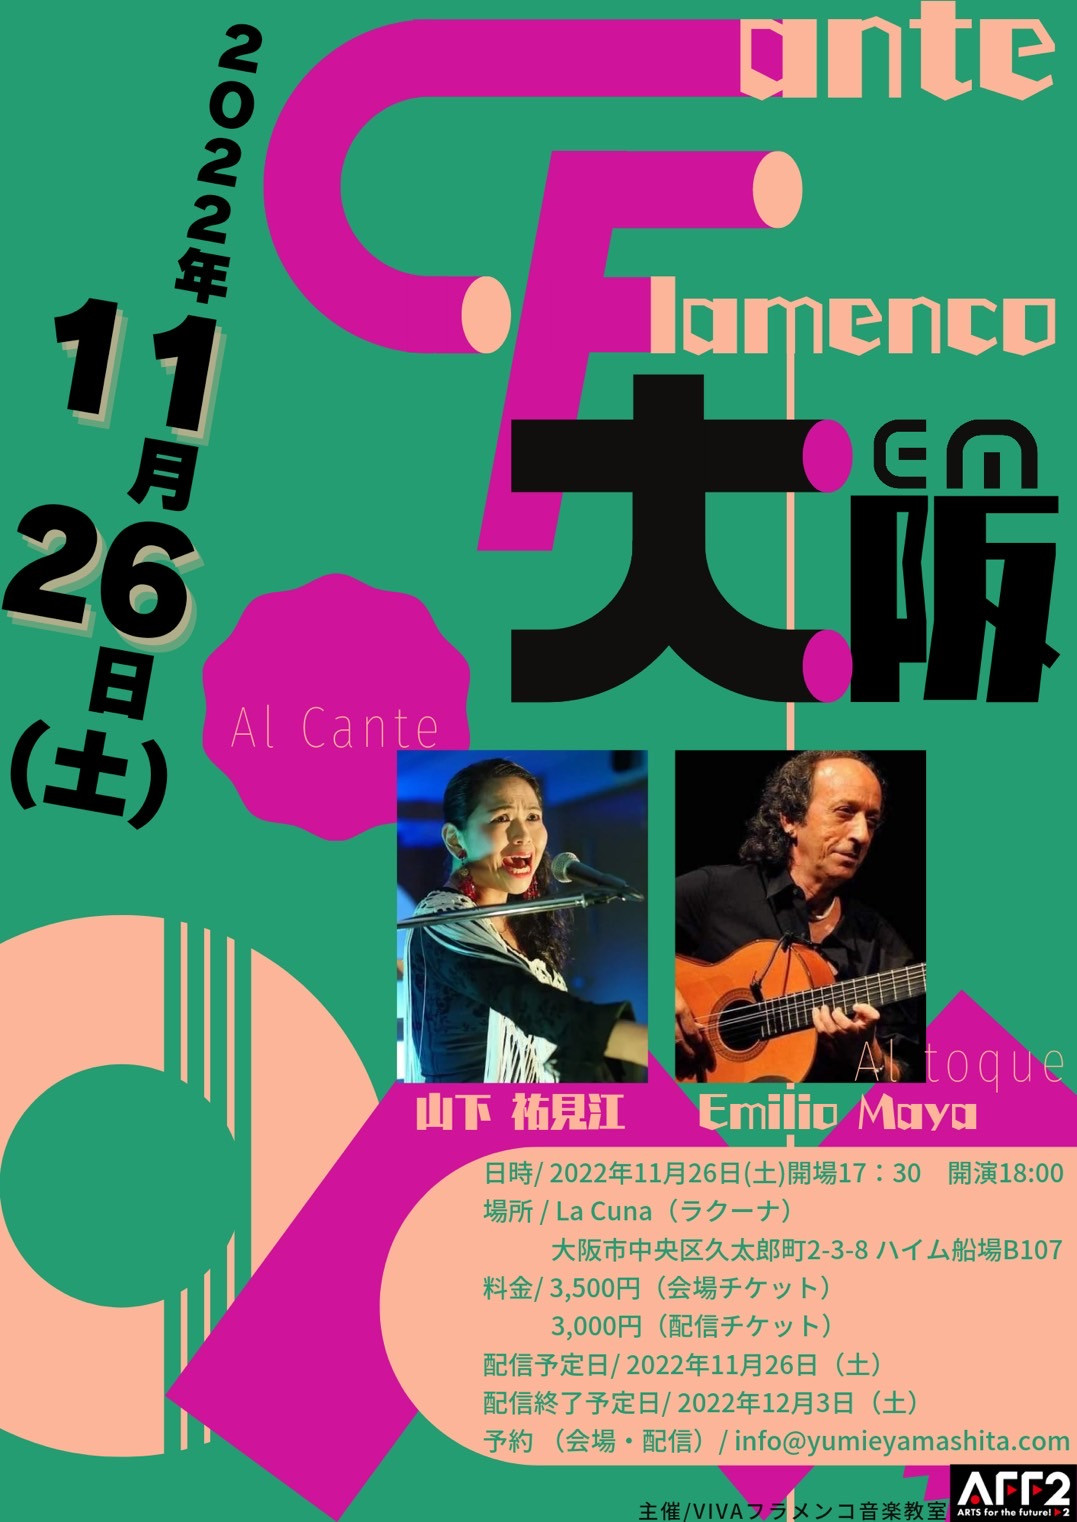 2022年11月26日(土) Cante Flamenco en 大阪 開催